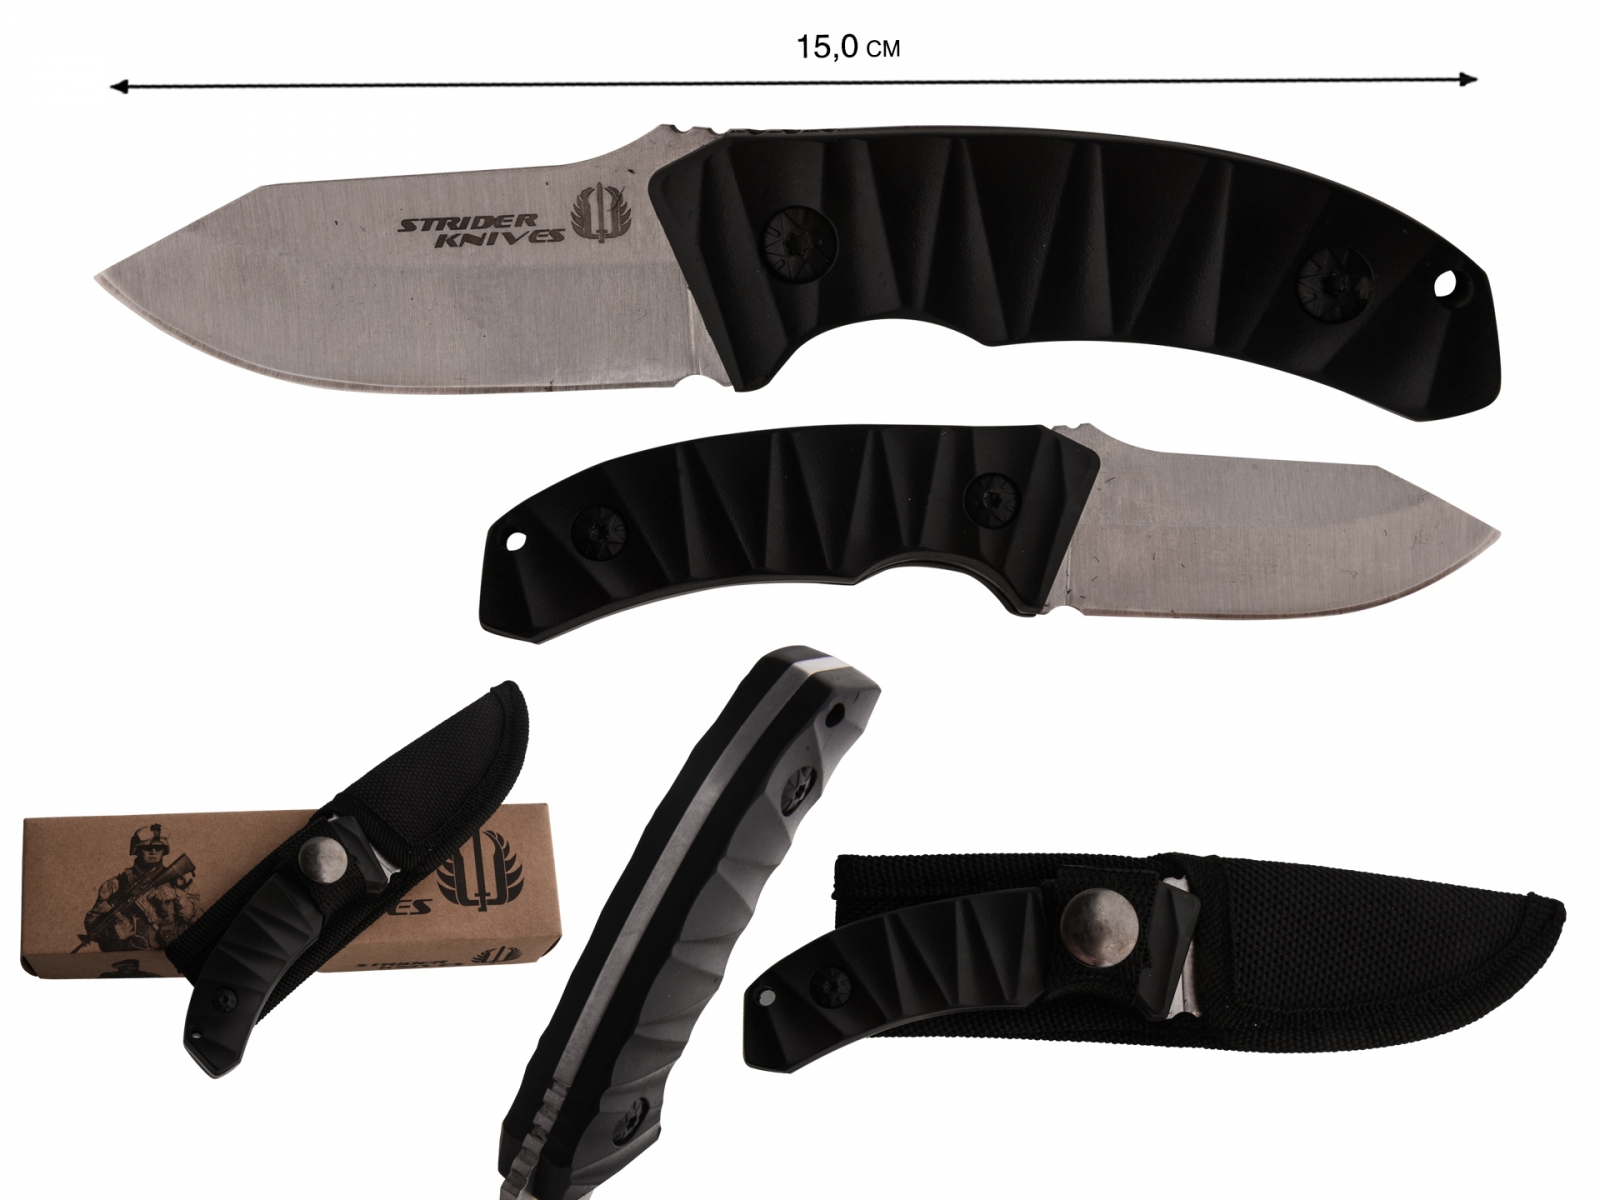 Заказать нож Strider оптом с доставкой или самовывозом